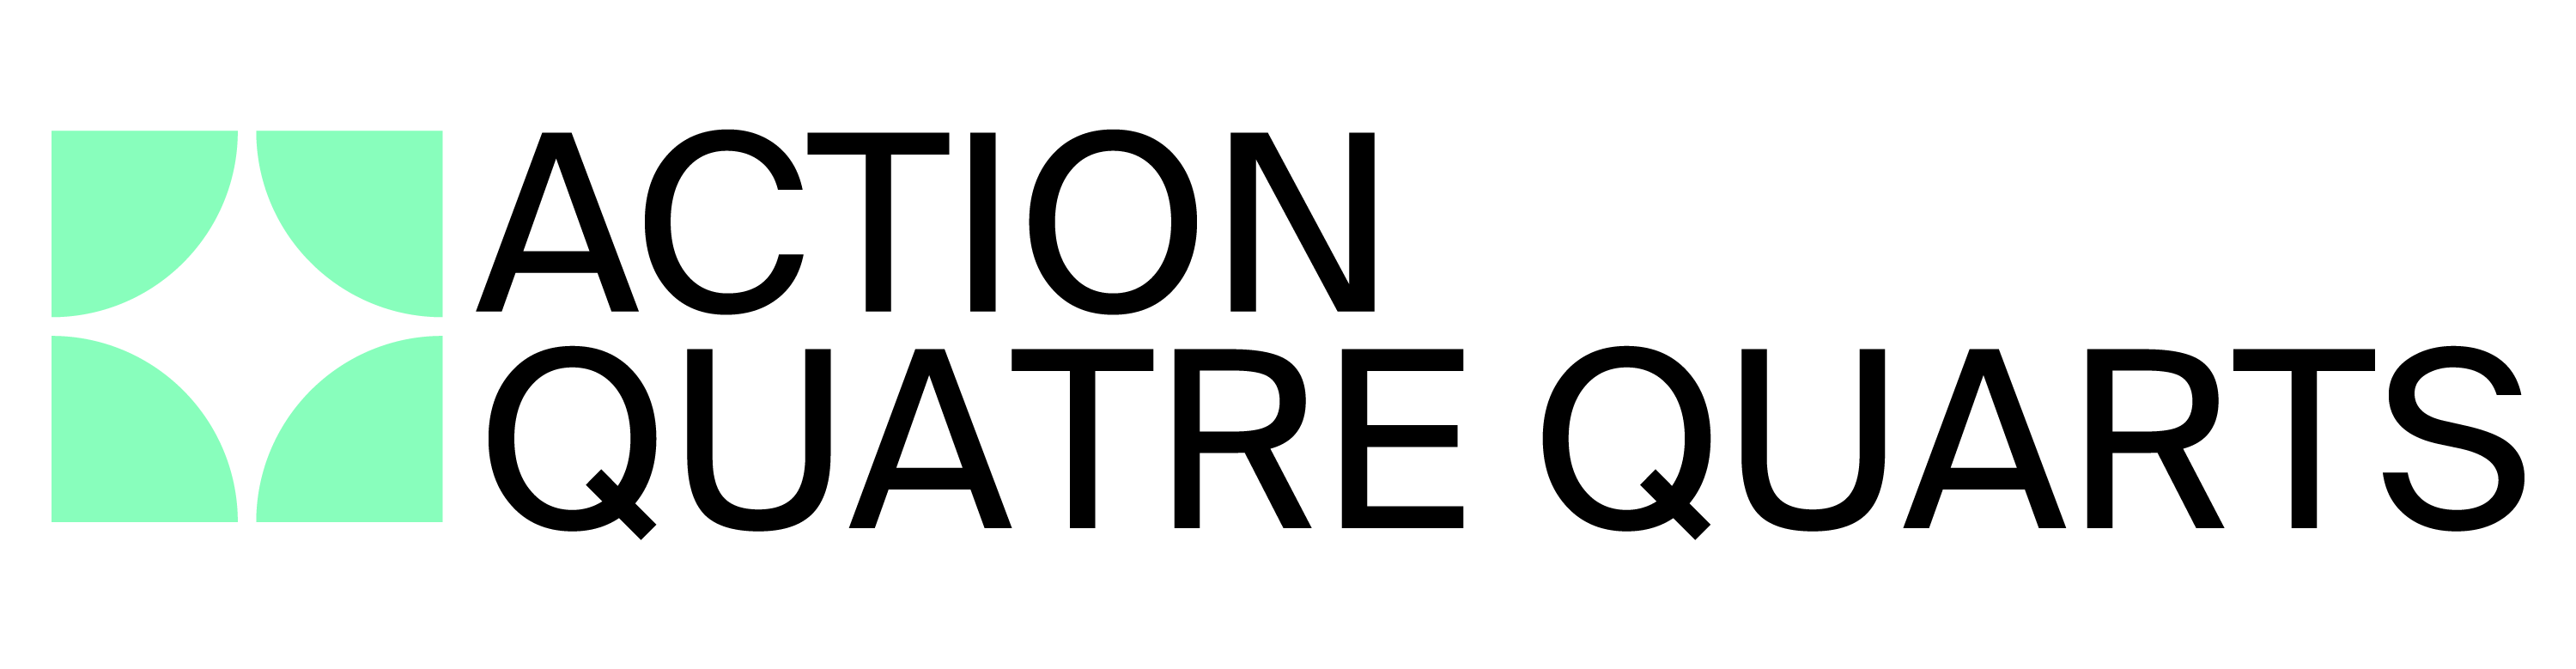 Aktion Vierviertel logo